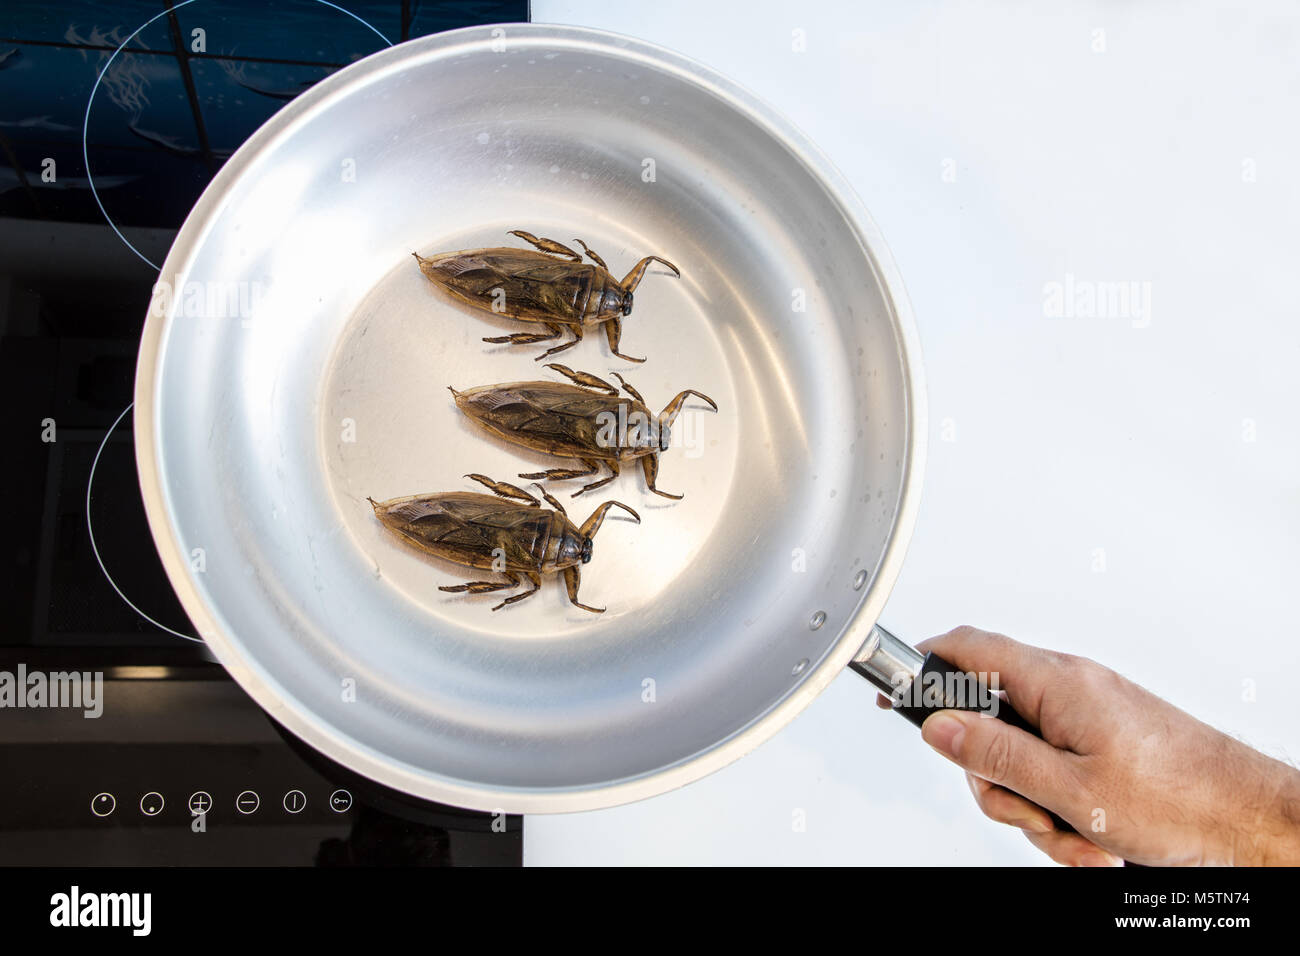 Preparación de insectos comestibles en una encimera. Cucarachas fritas en una sartén. Foto de stock